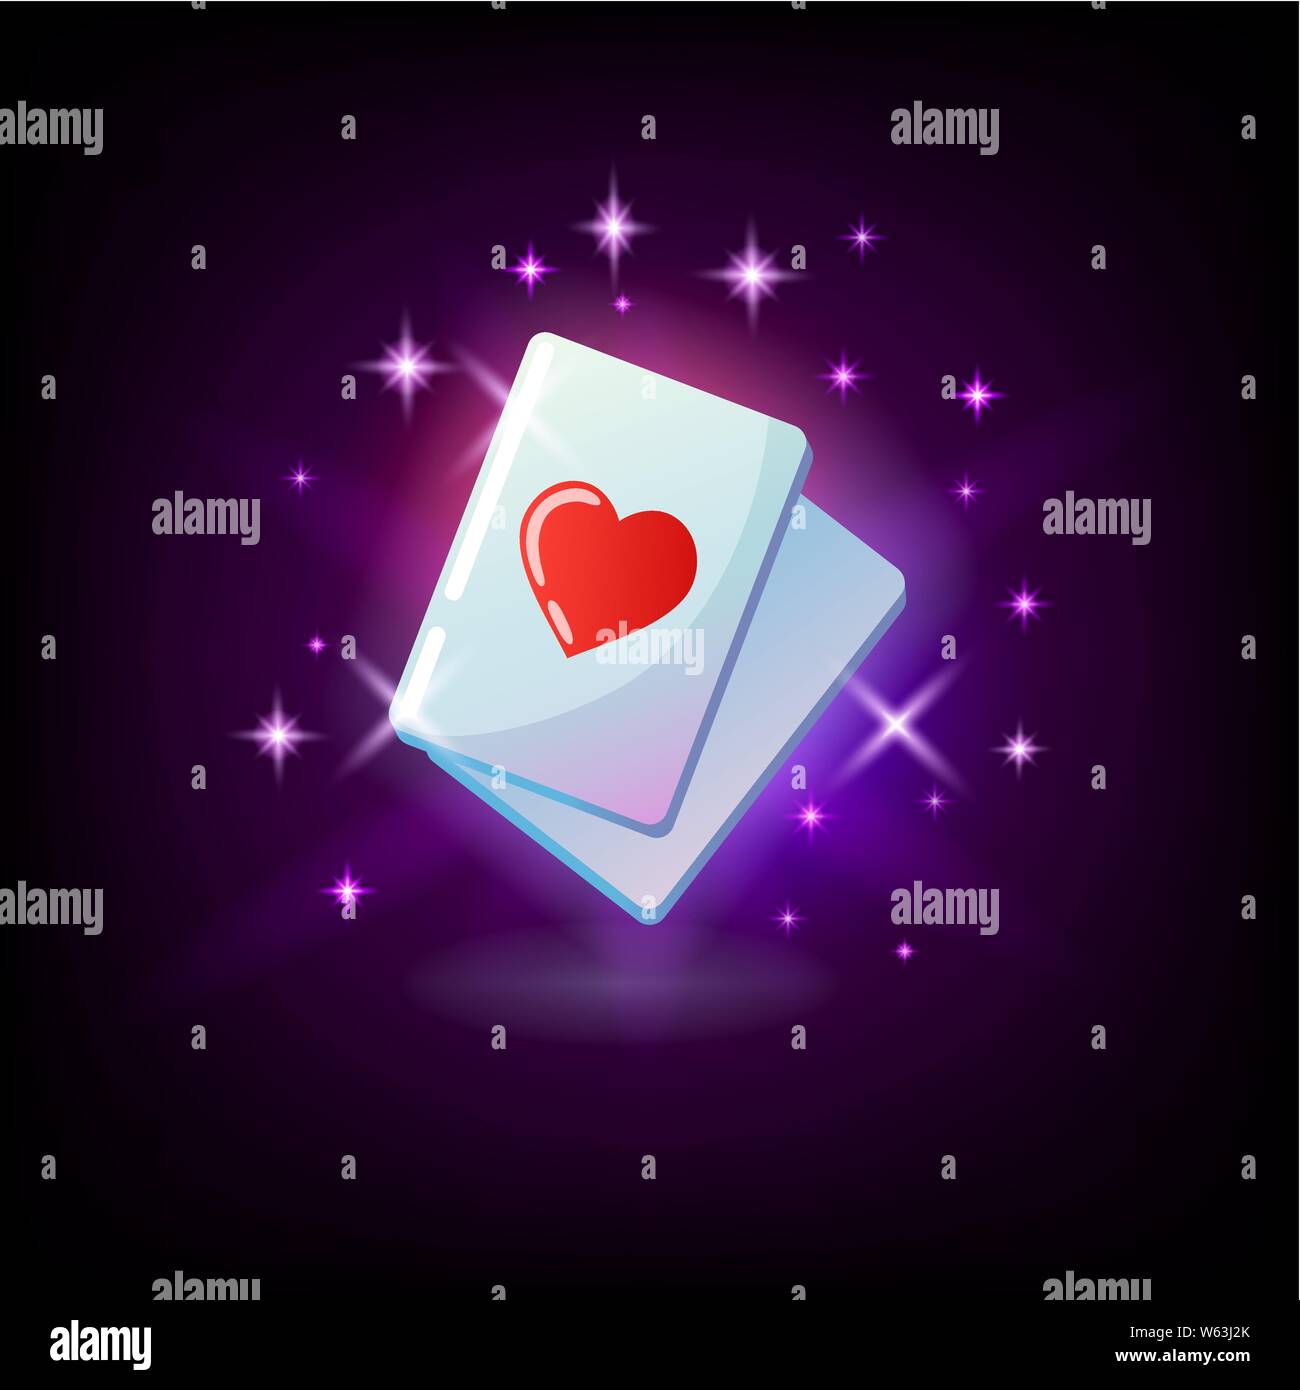 As de cœur, cœur rouge carte costume, ace, l'icône de l'emplacement pour le casino en ligne ou le logo pour téléphone portable de jeu combinaison gagnante, la main de poker sur fond violet foncé Illustration de Vecteur